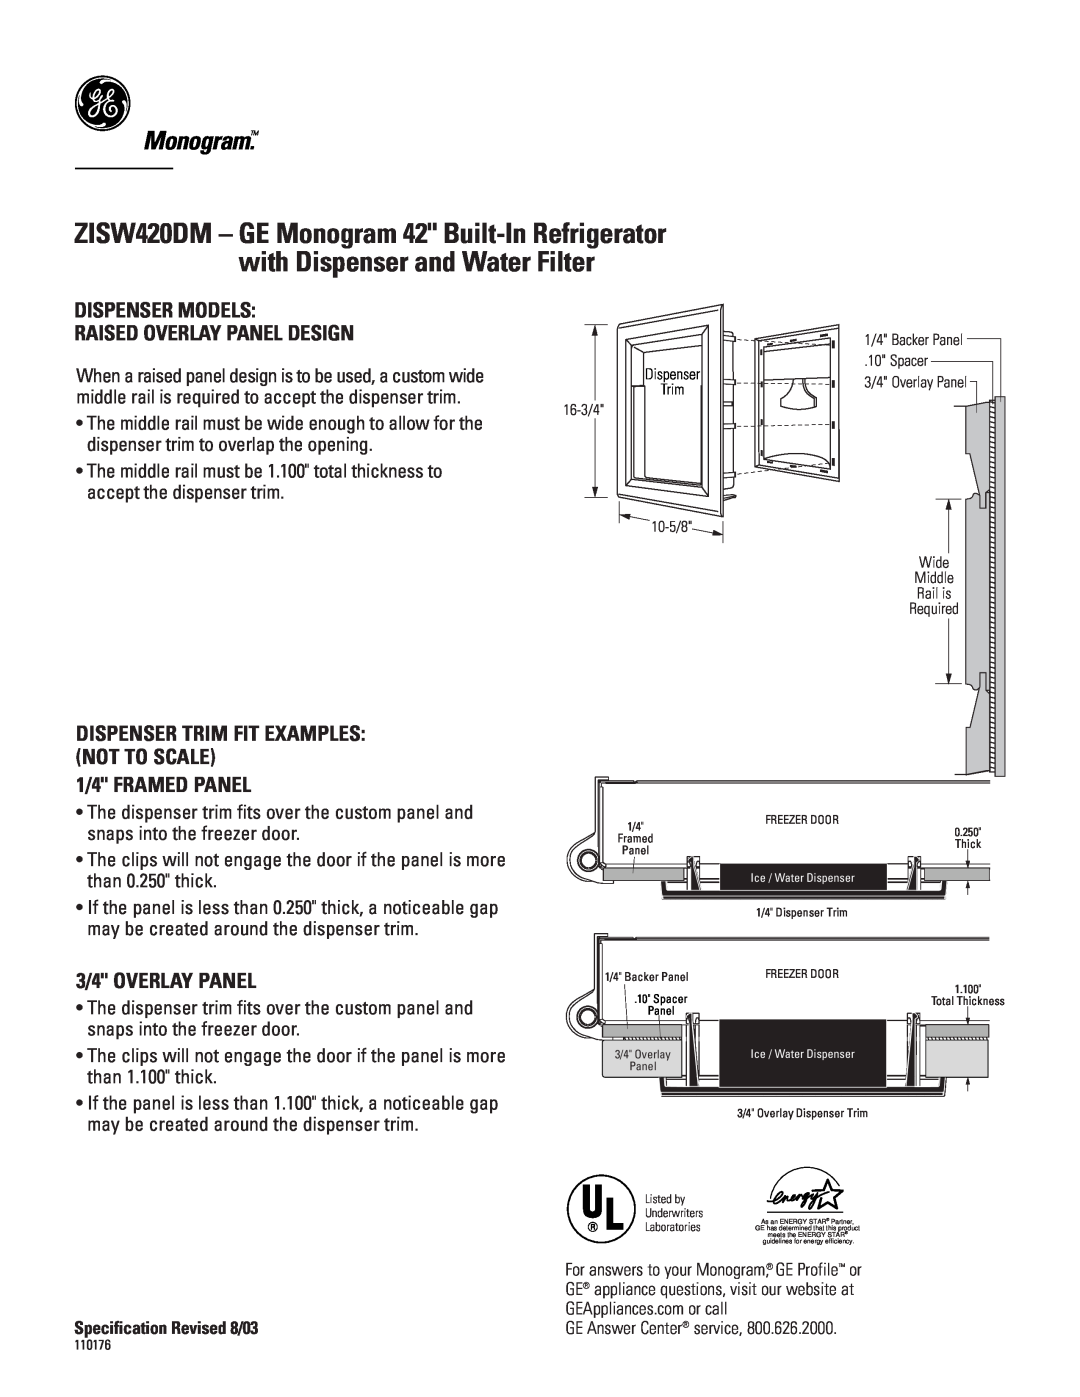 GE ZISW420DM specifications Monogram, Dispenser Models Raised Overlay Panel Design, 1/4 FRAMED PANEL, 3/4 OVERLAY PANEL 